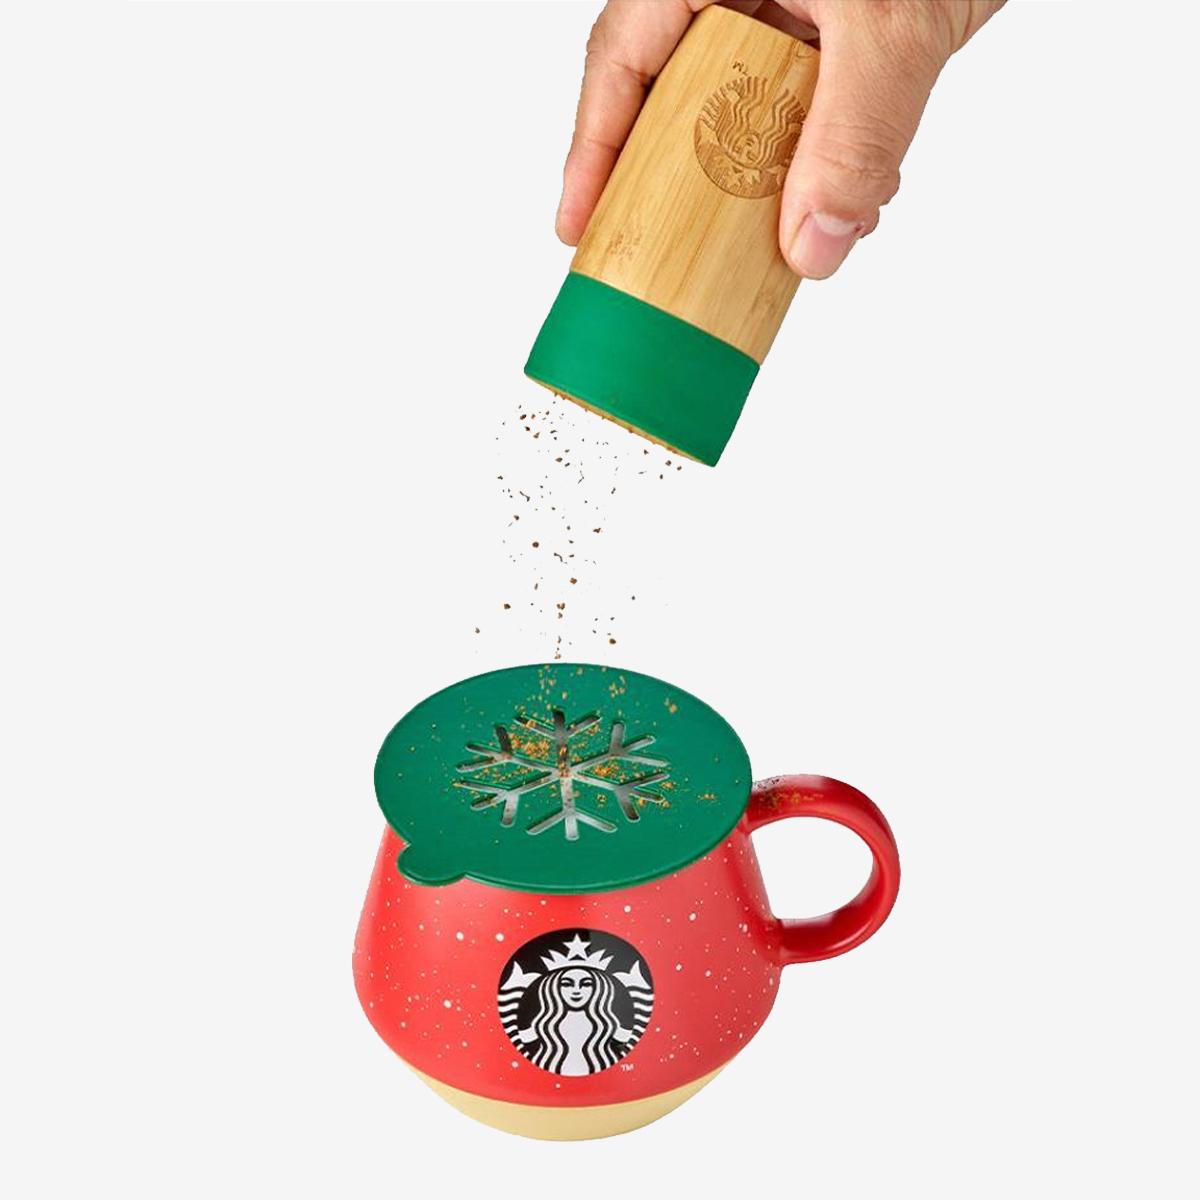 《聖誕系列》咖啡拉花工具組合